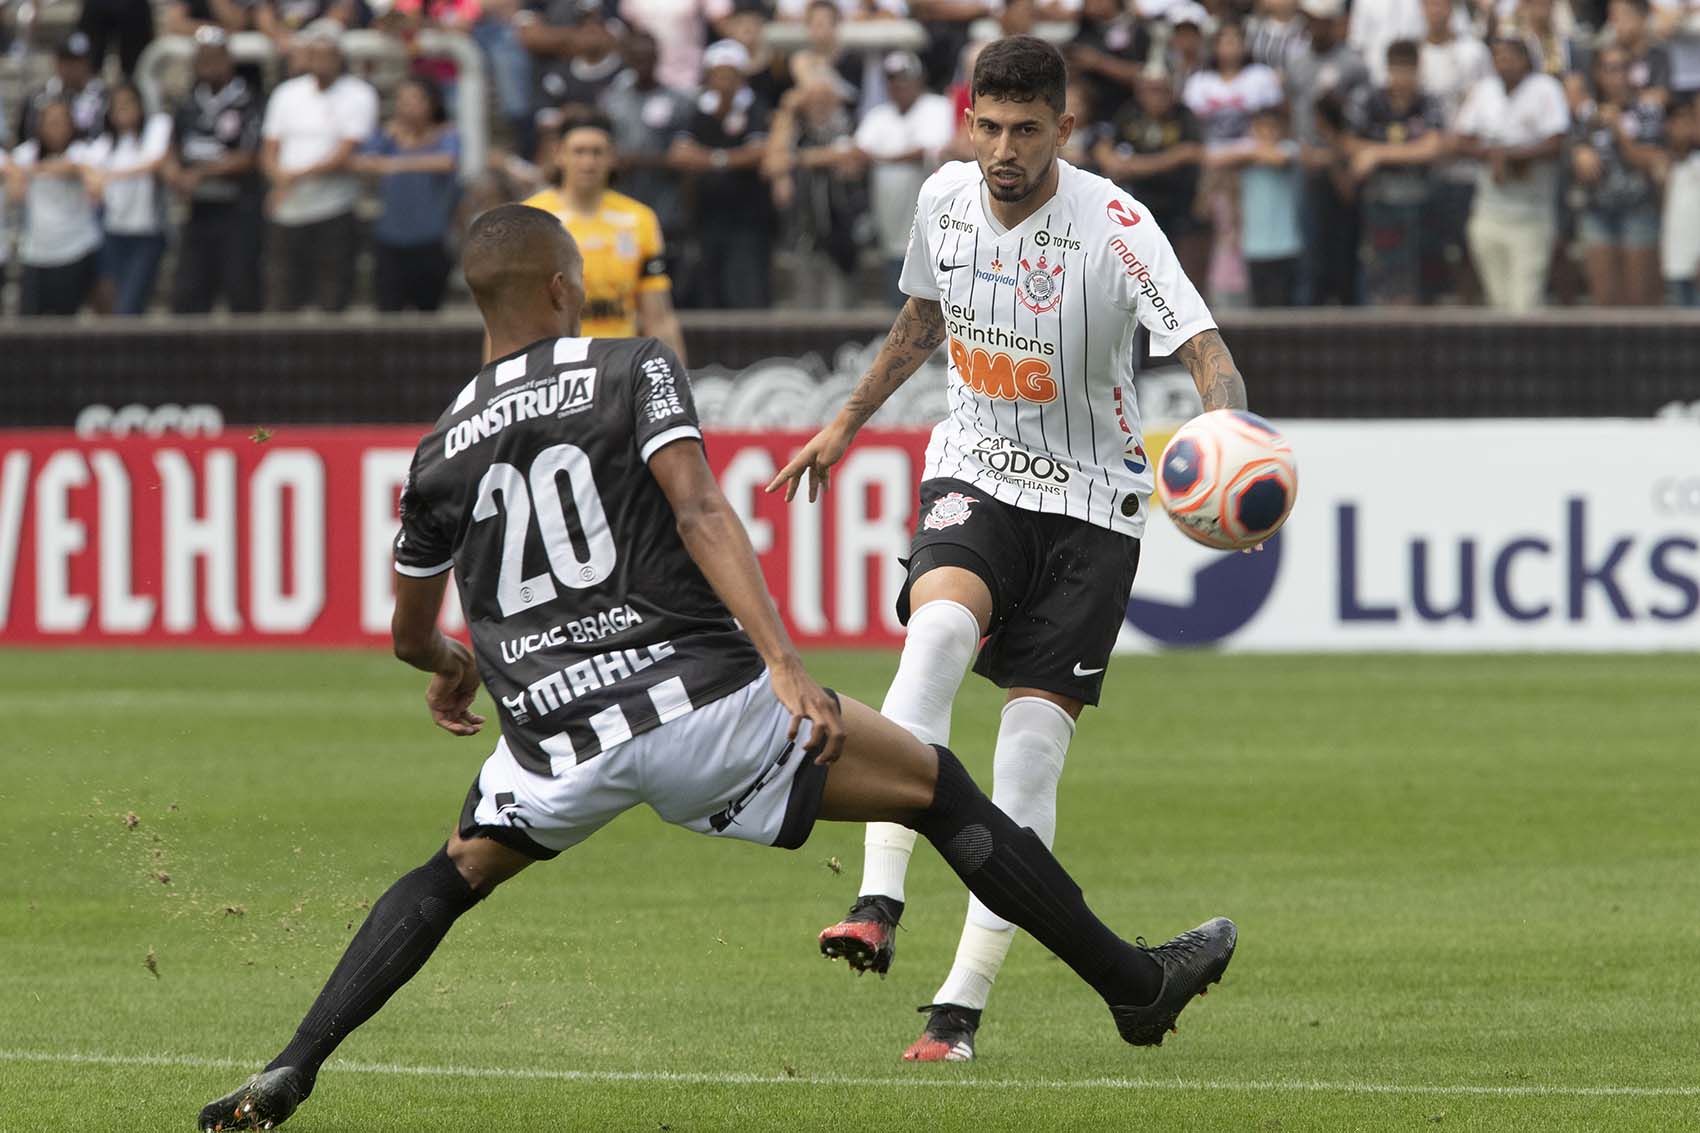 FPF agenda os três próximos jogos do Corinthians no Paulistão